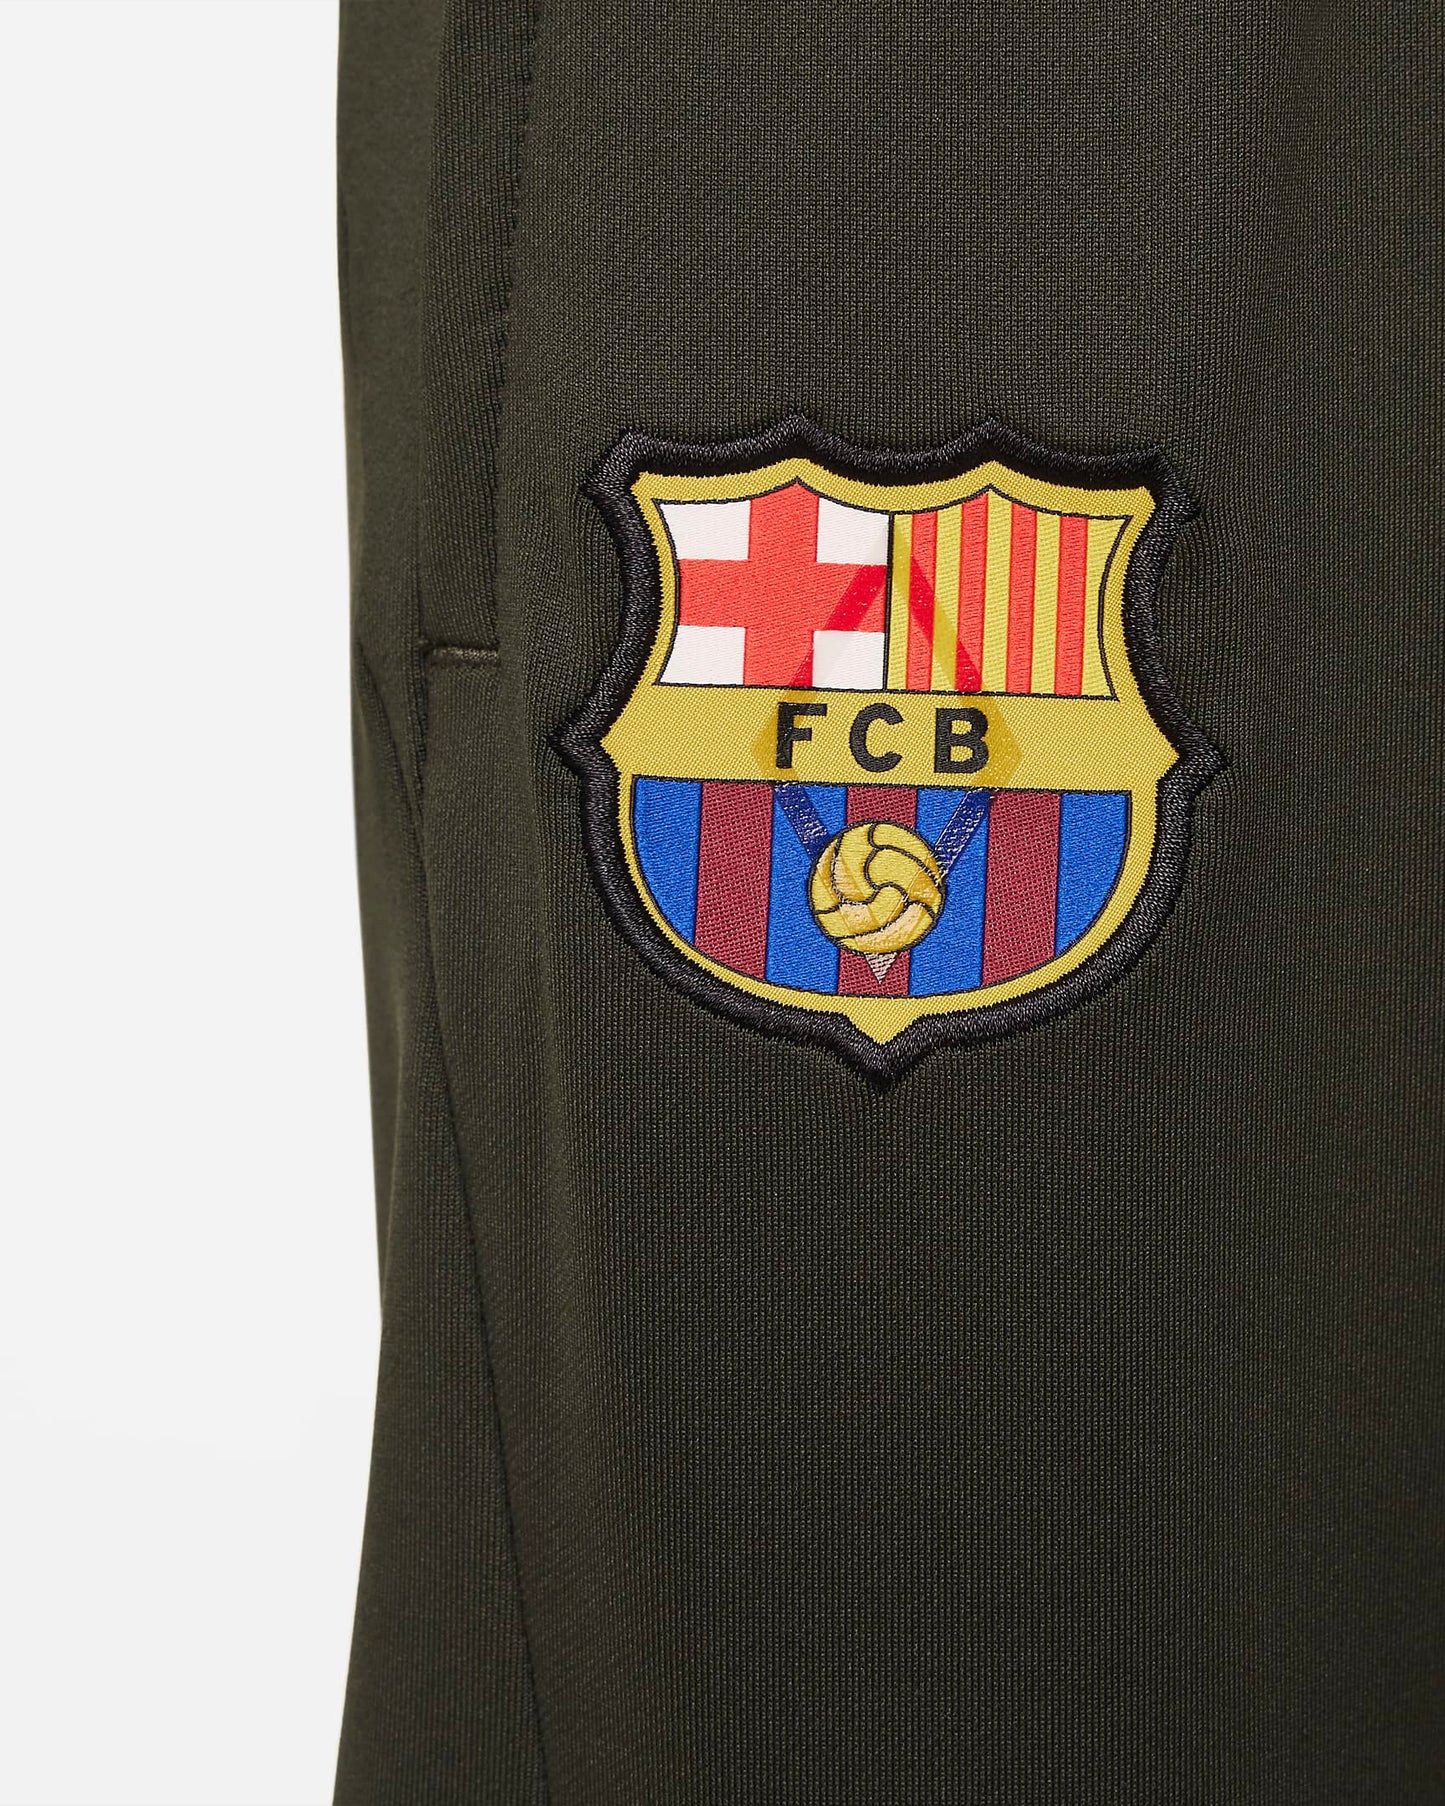 Barcelona Strike 23/24 Big Kids' Nike Dri-FIT Knit Football Pants